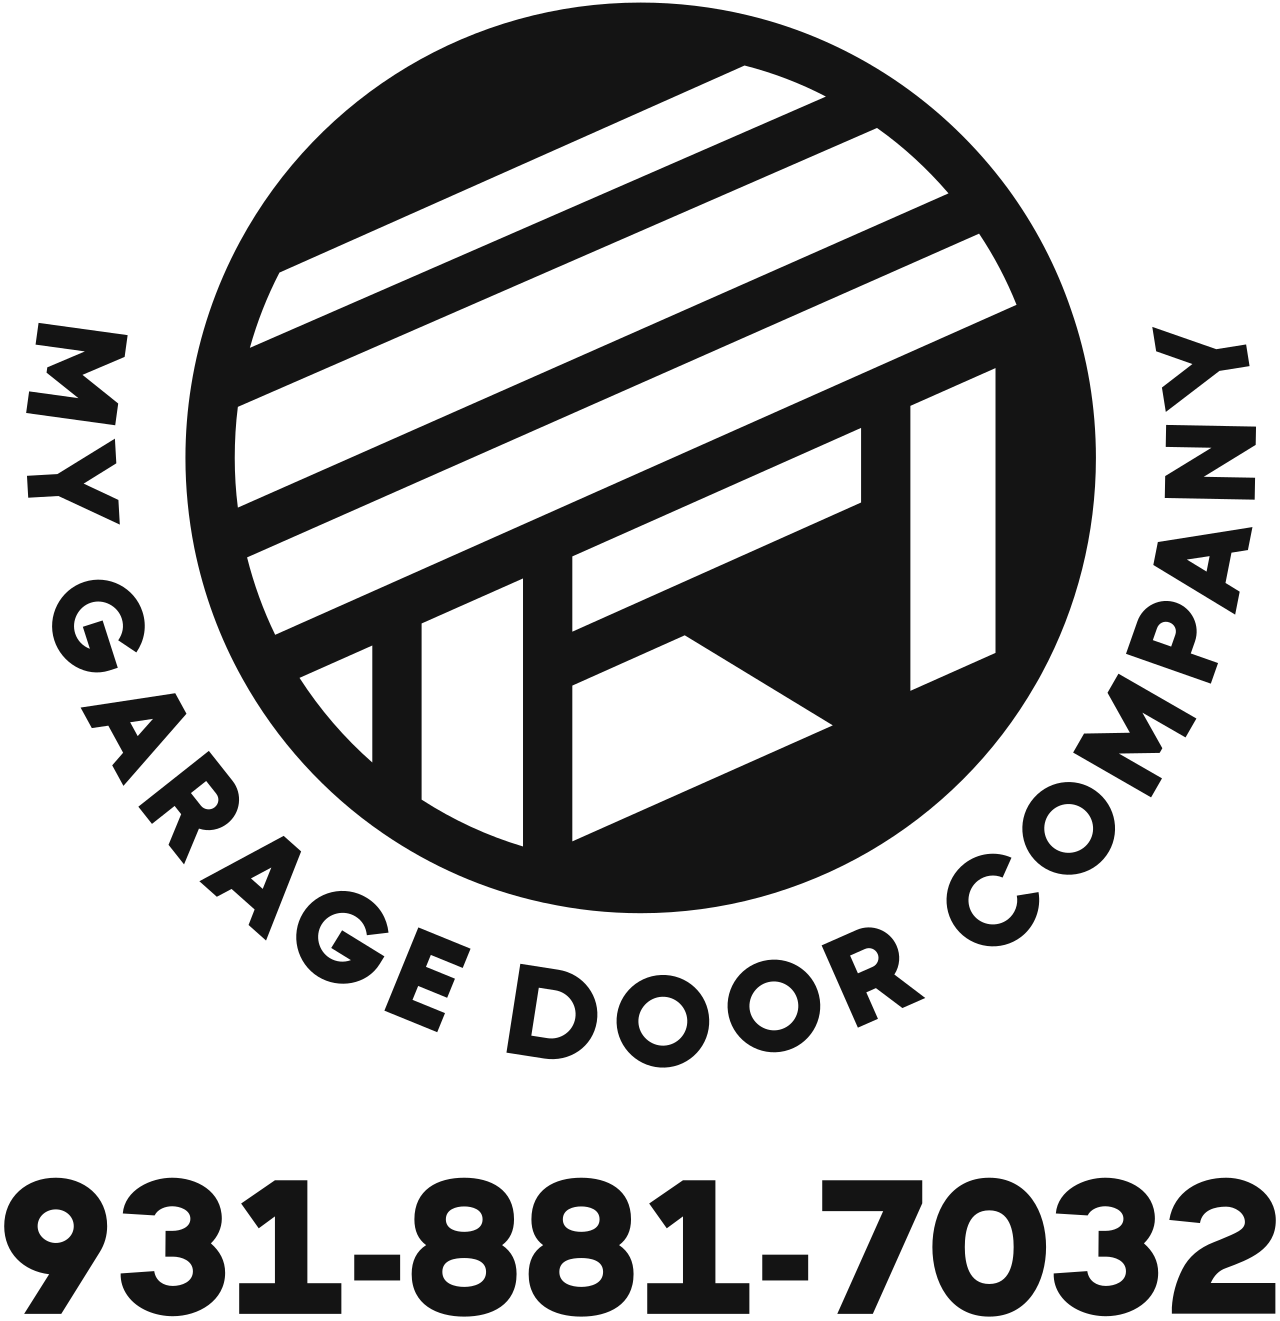 My Garage Door Company's logo